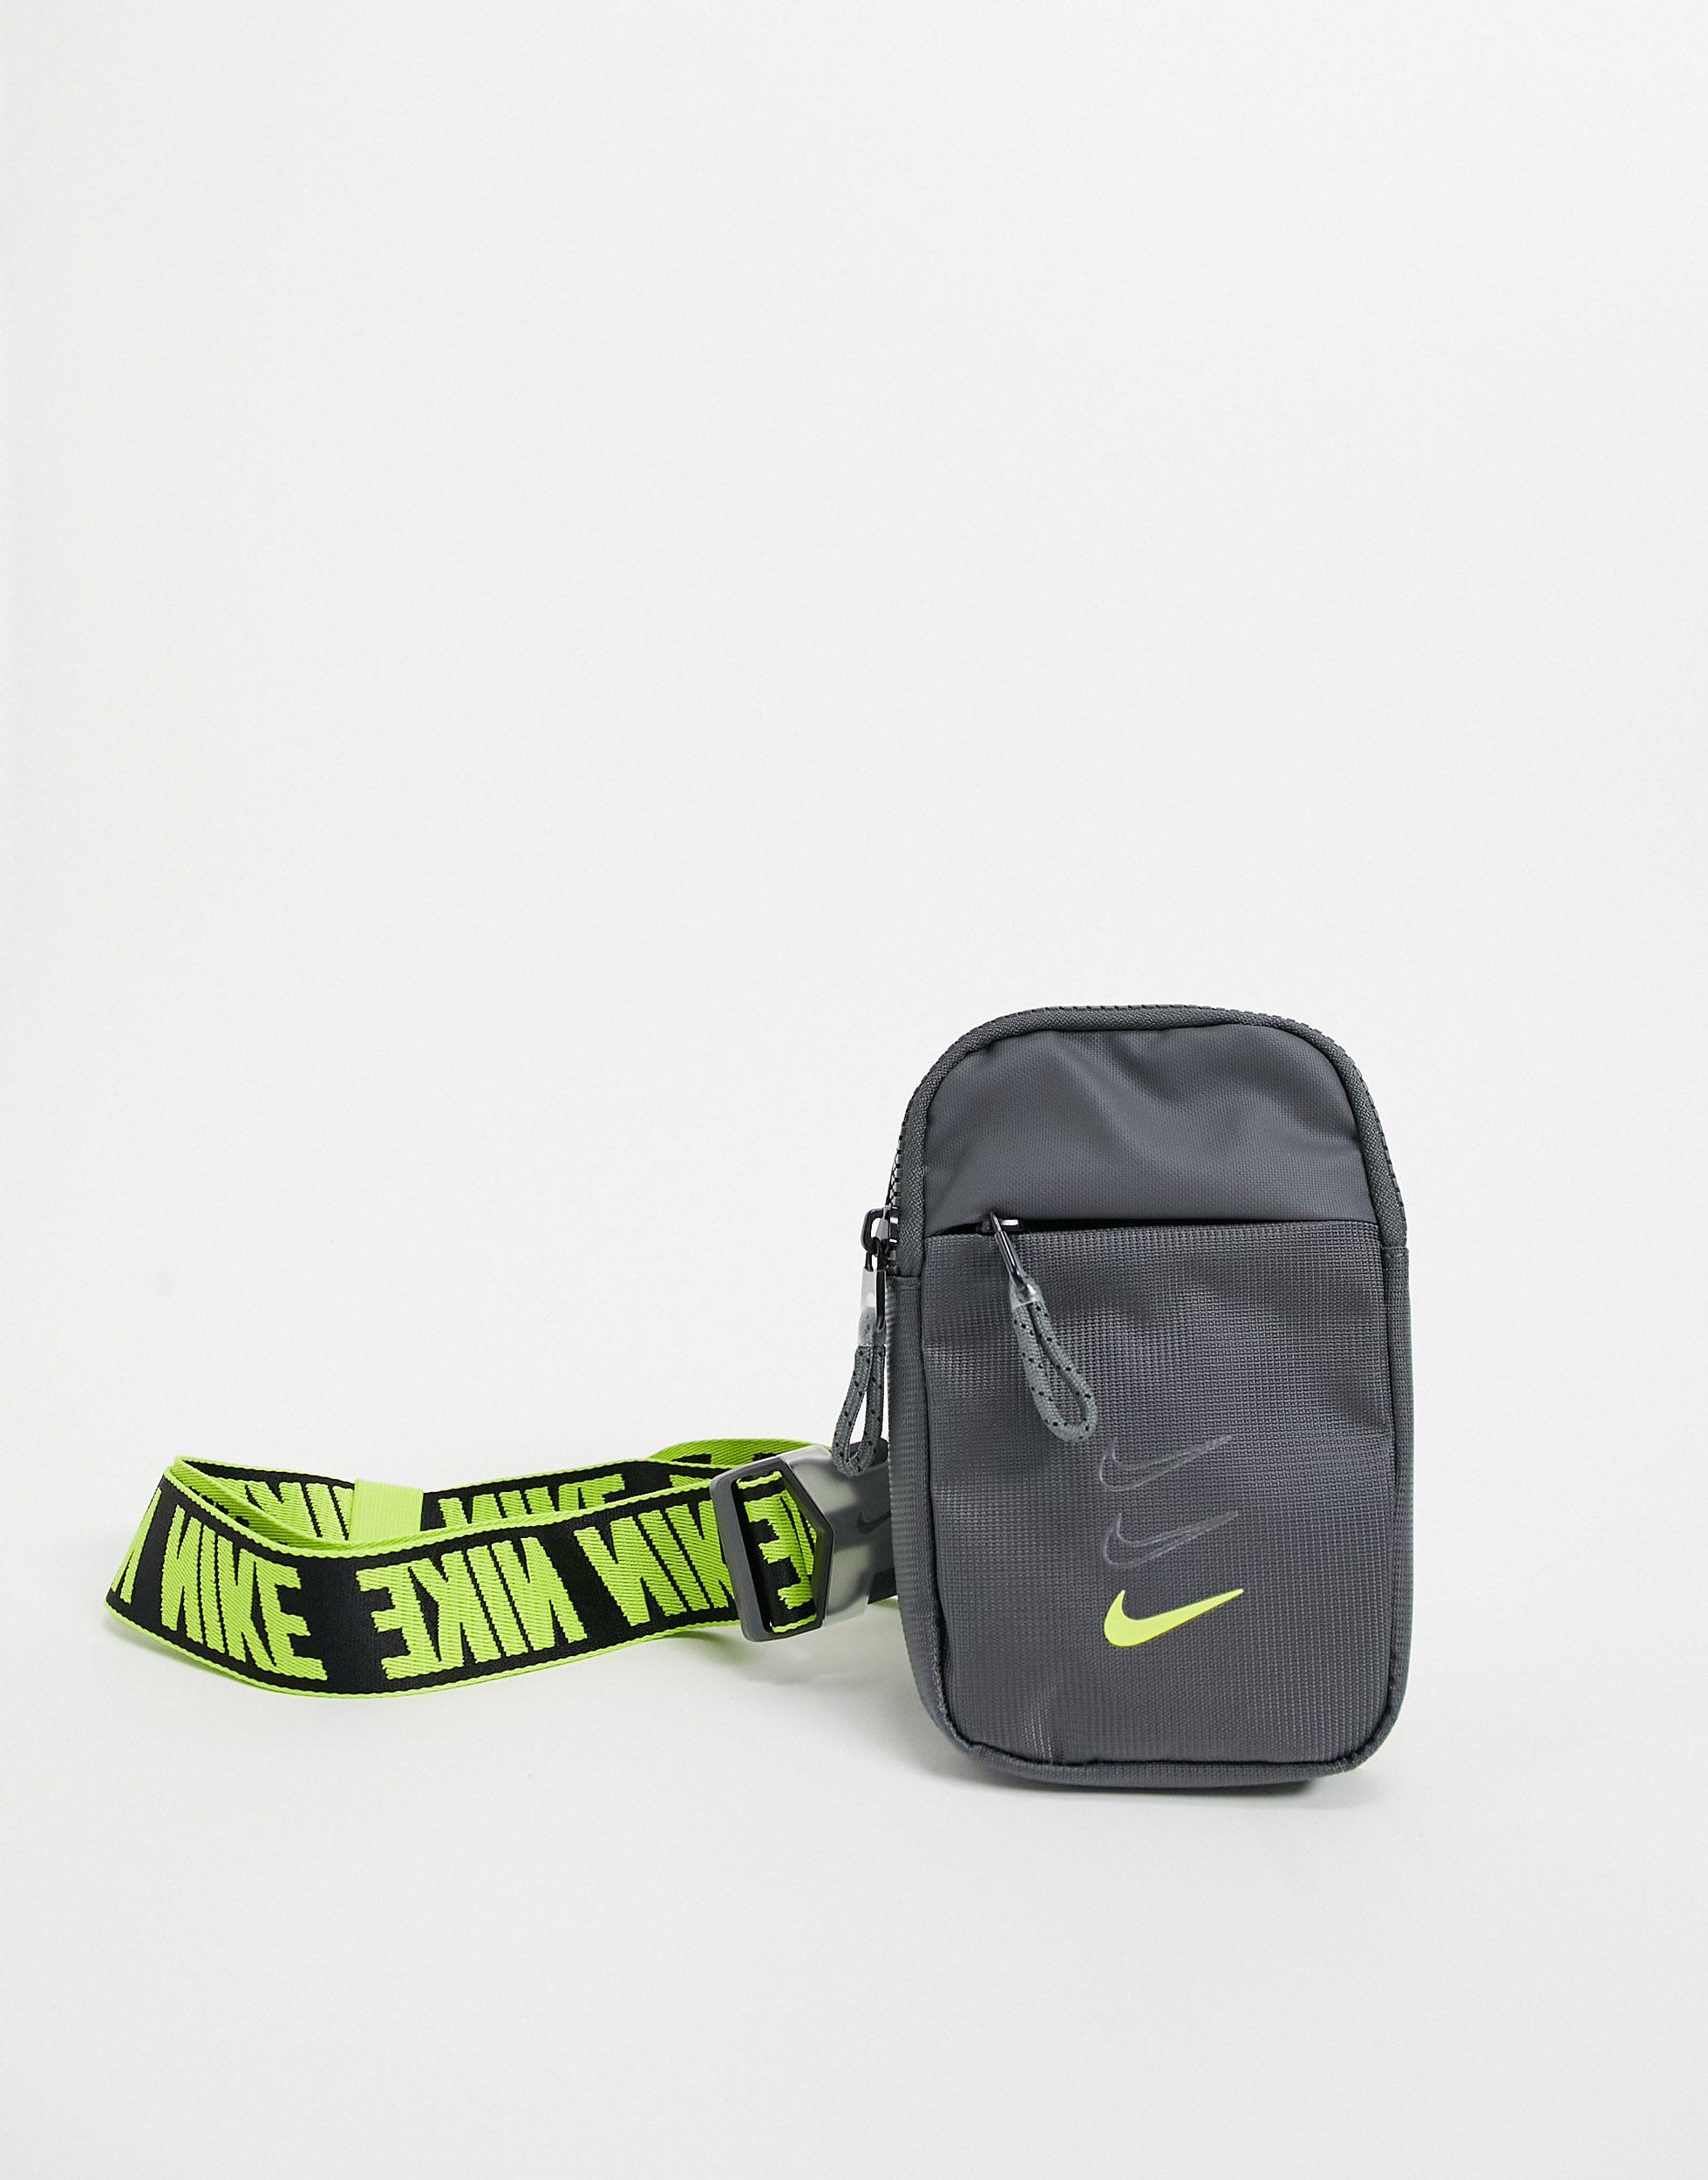 Мессенджеры через плечо мужские. Сумка найк Crossbody Bag. Nike Advance сумка. Nike Advance сумка через плечо. Барсетки Nike Heritage.